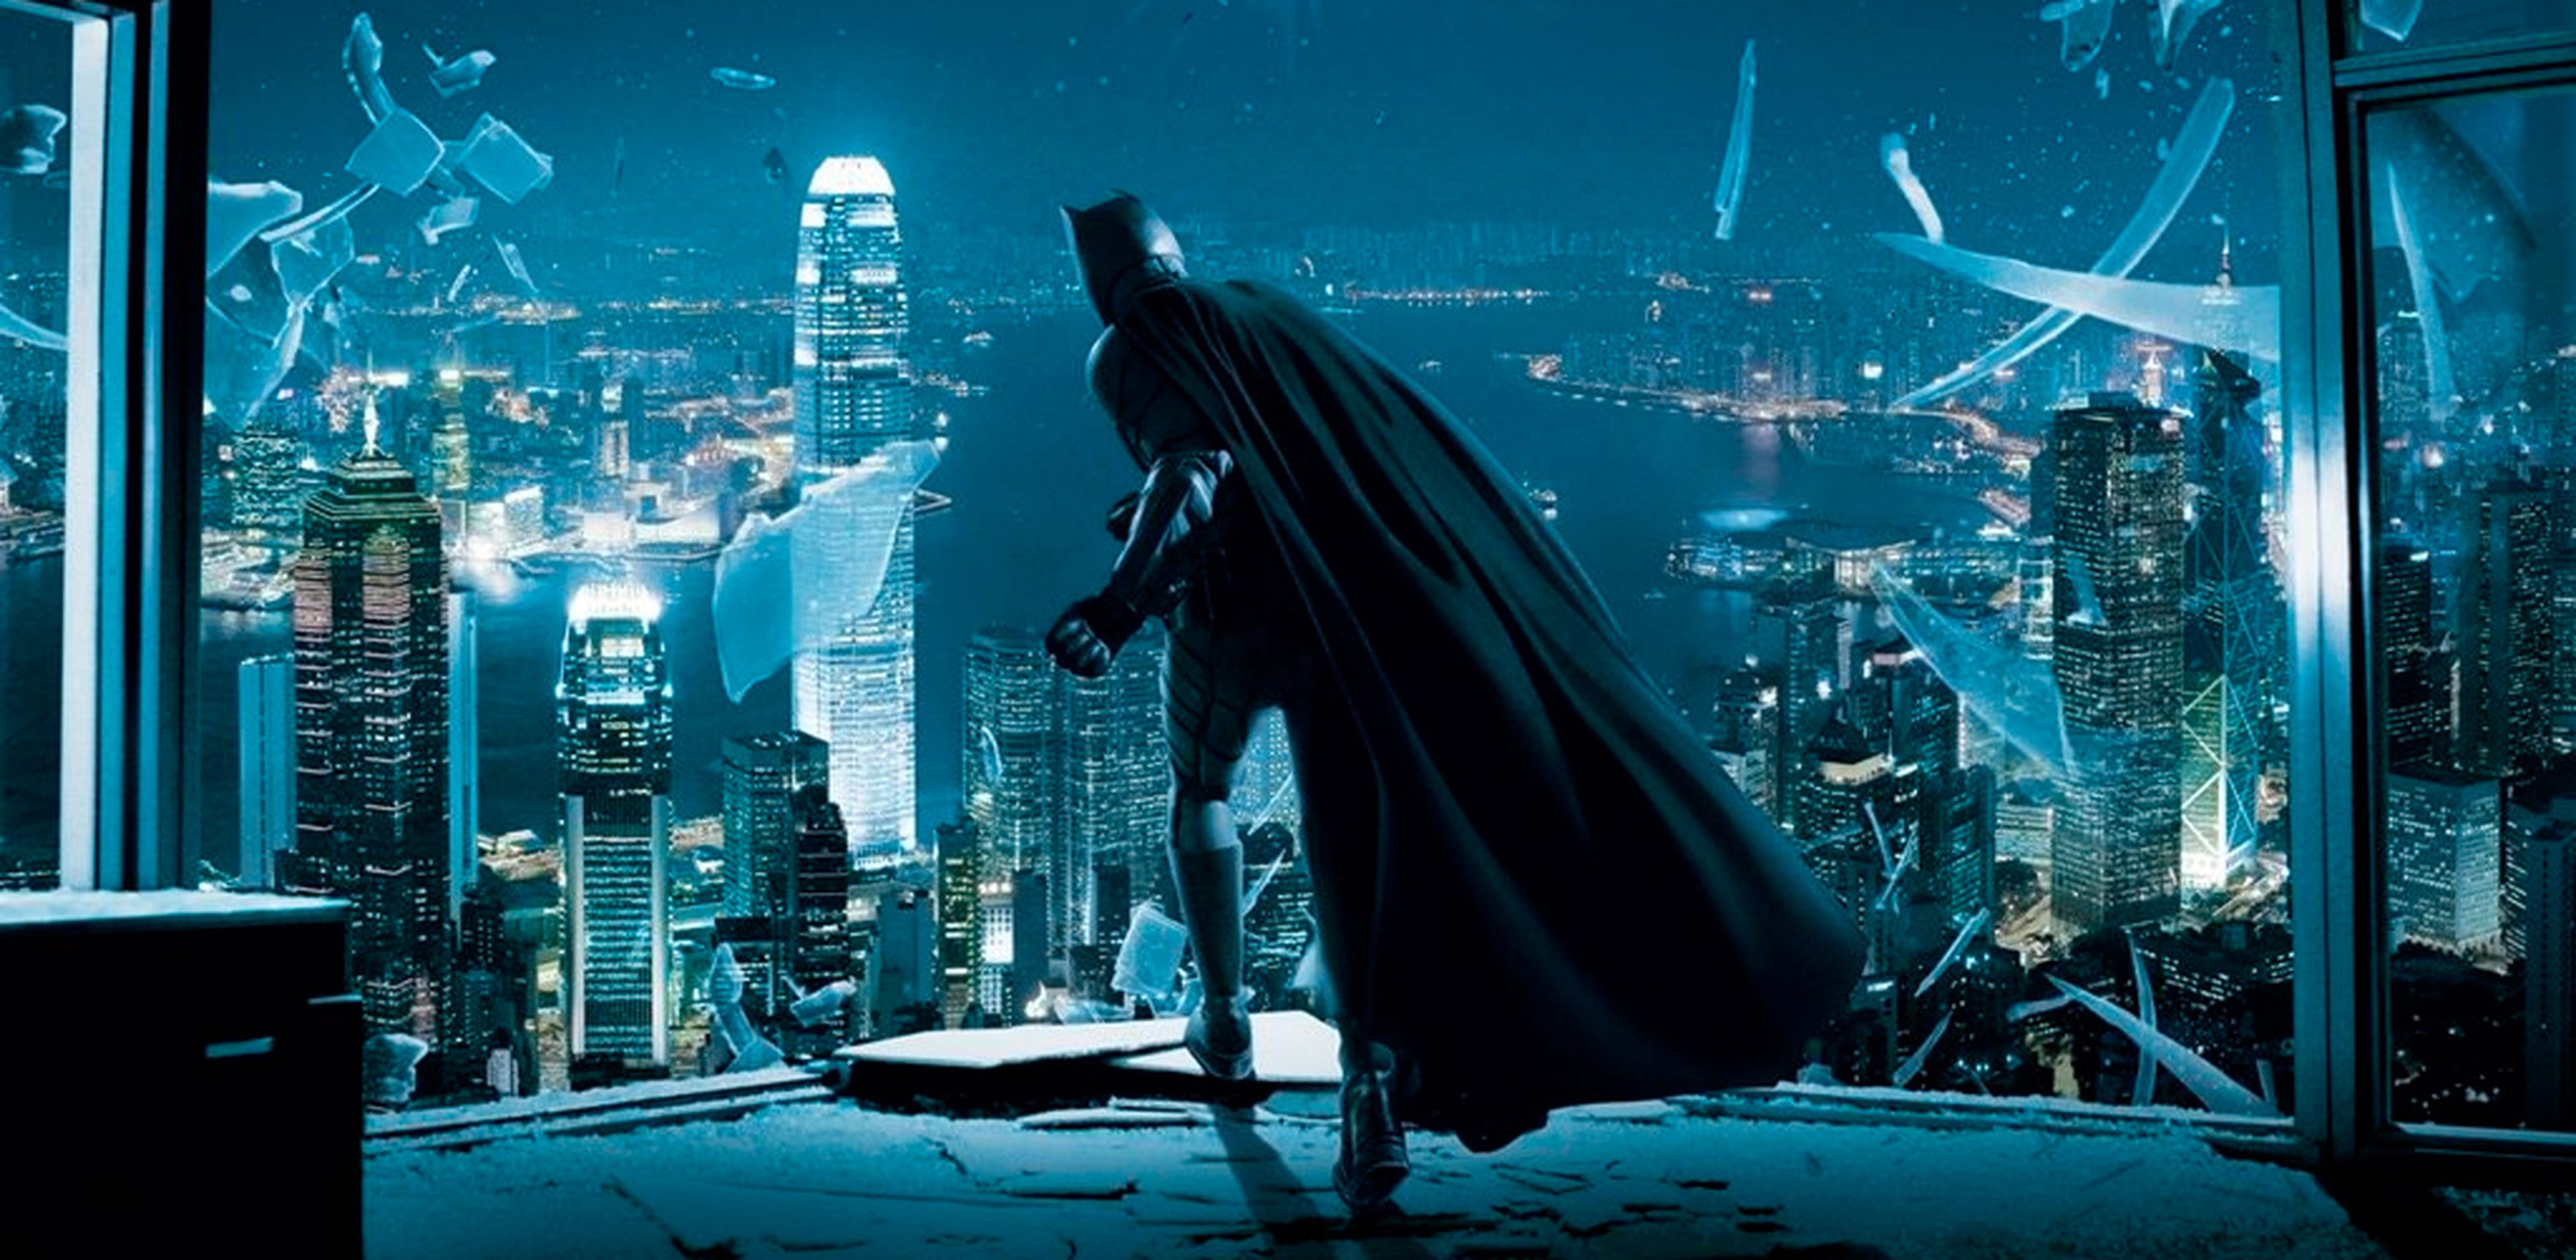 Cine de superhéroes: Crítica de El Caballero Oscuro